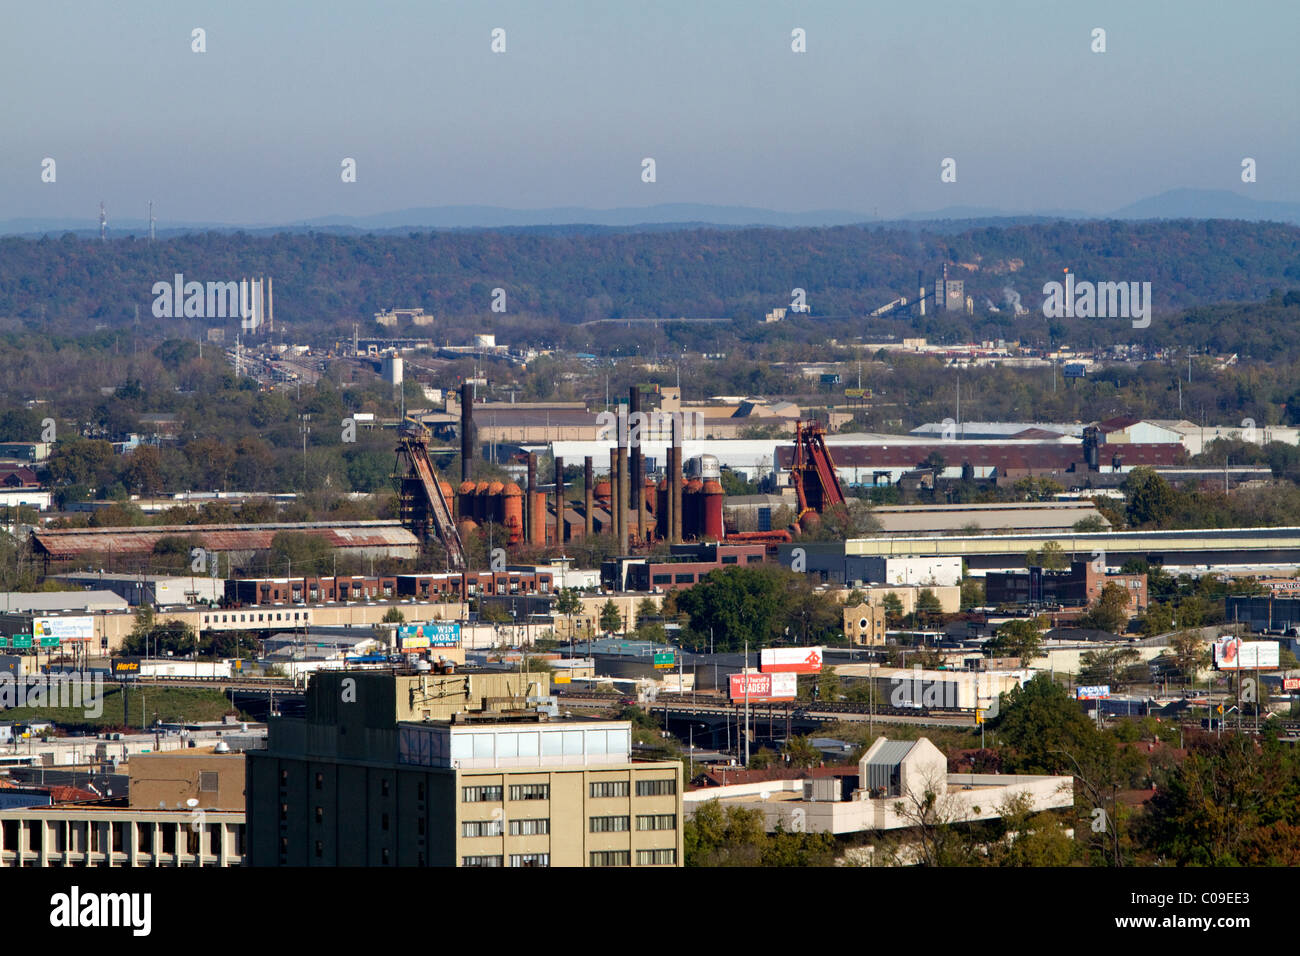 Blick auf die Stadt Birmingham entnommen Vulcan Park, Alabama, USA. Stockfoto